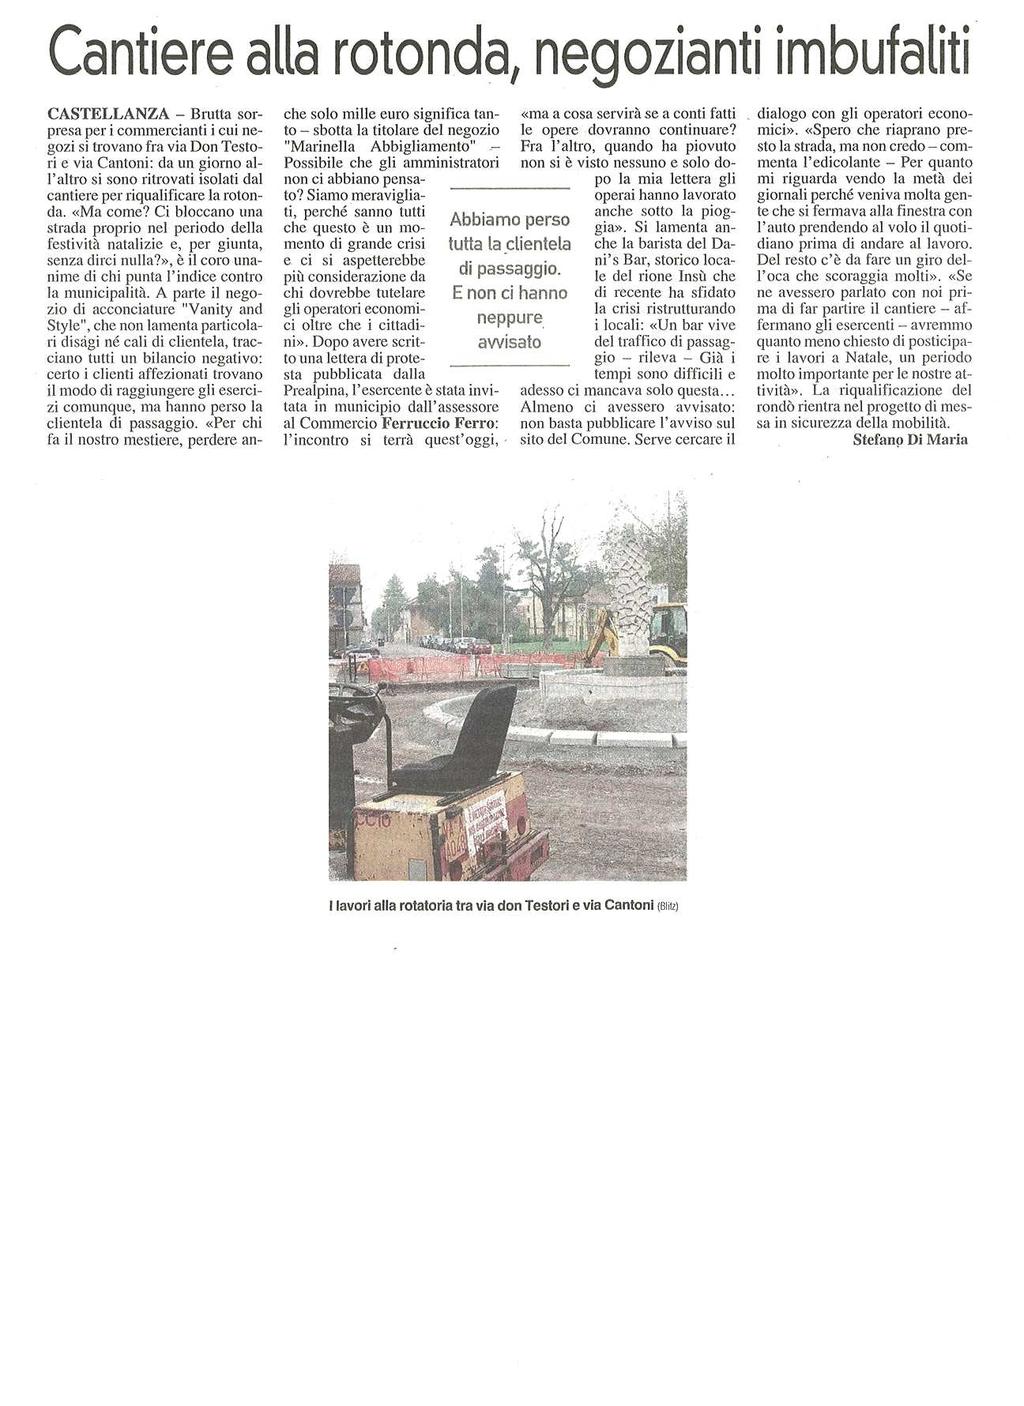 CANTIERE ALLA ROTONDA, NEGOZIANTI IMBUFALITI pubblicato il 09/12/2014 a